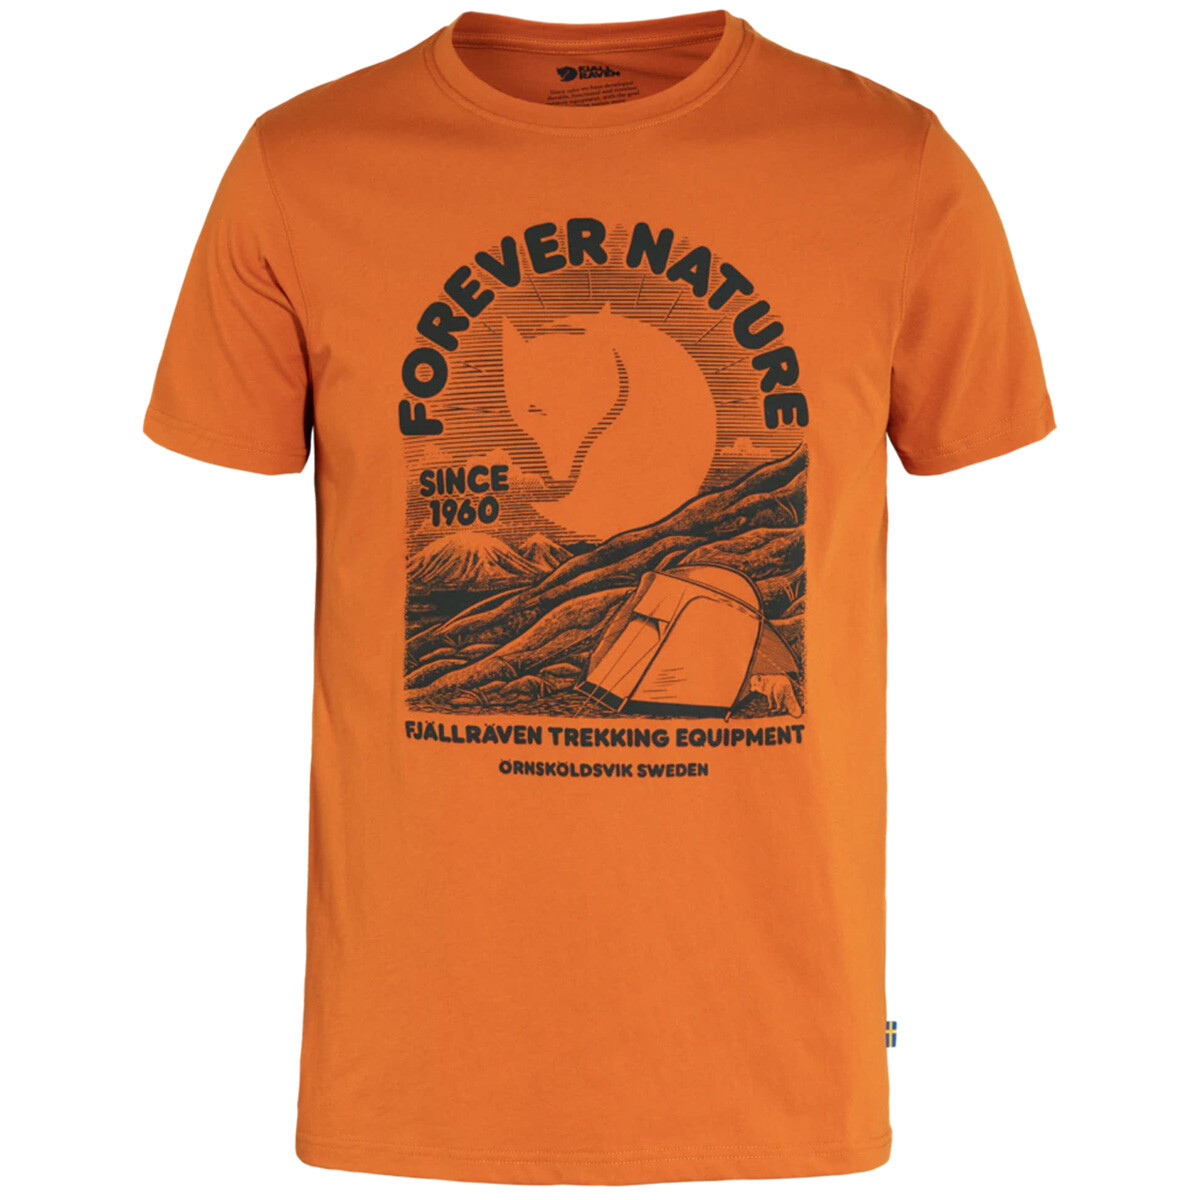 Se Fjällräven Equipment T-shirt (Sunset Orange, 2XL) hos Specialbutikken